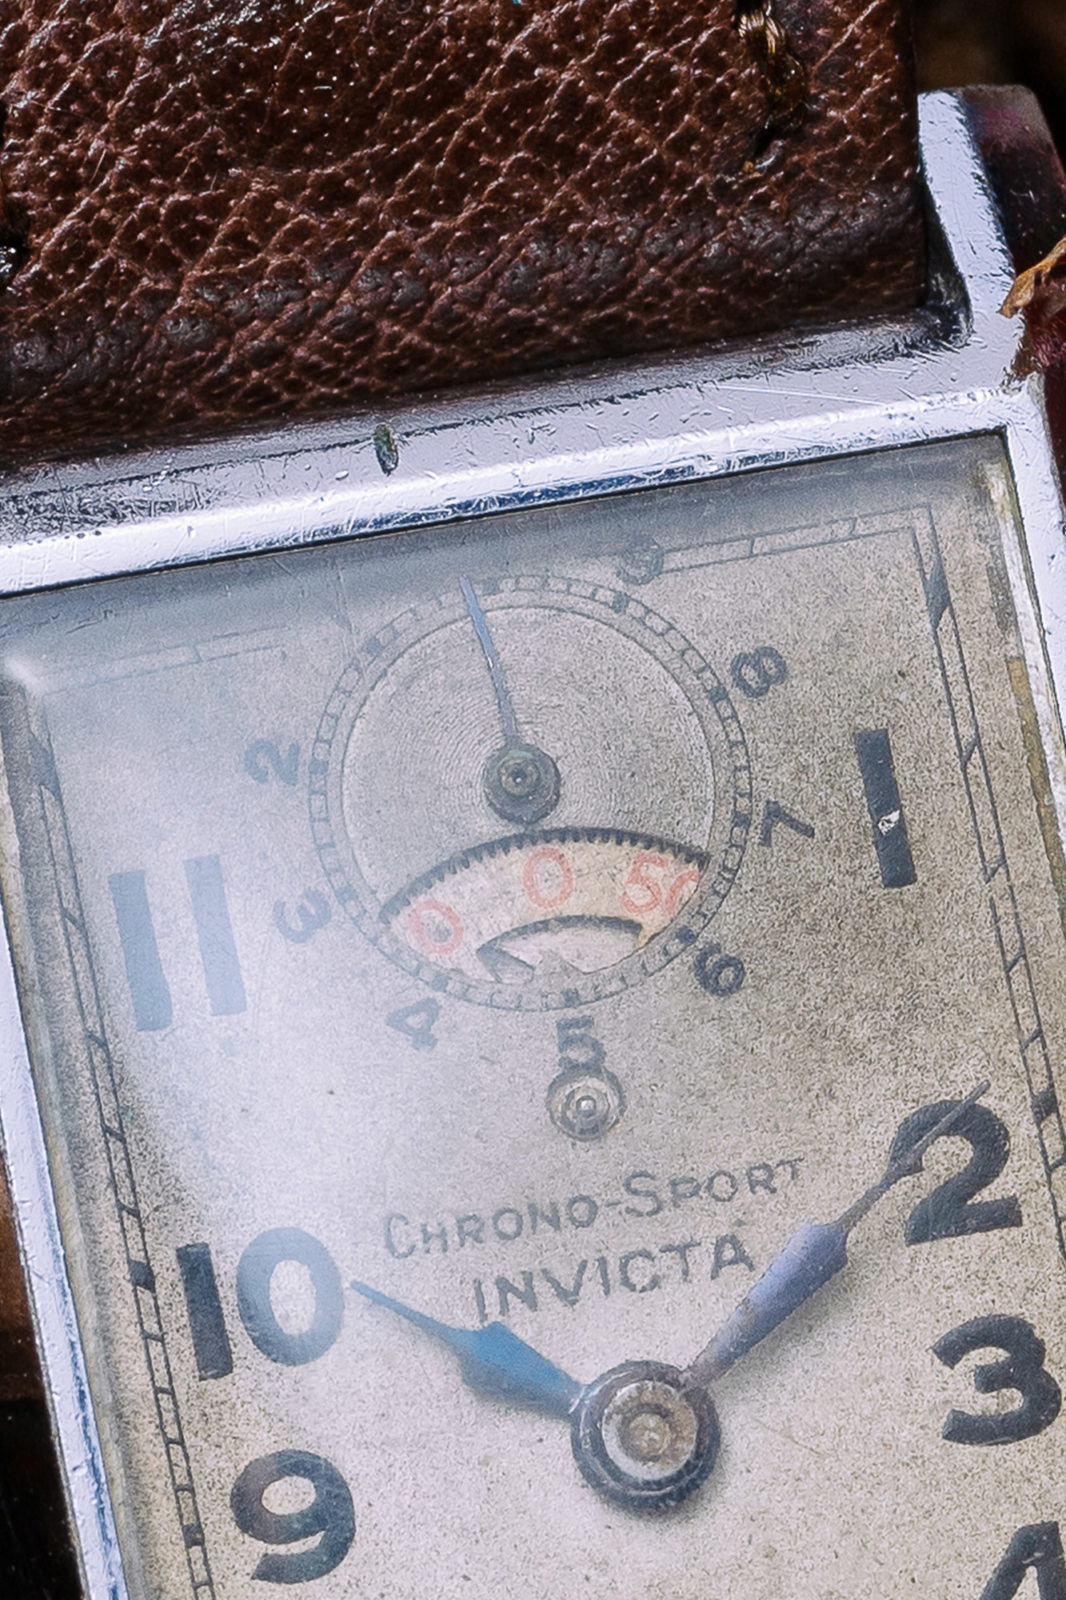 Invicta Chrono-sport - Aguttes vente de montres de collection du jeudi 10 décembre